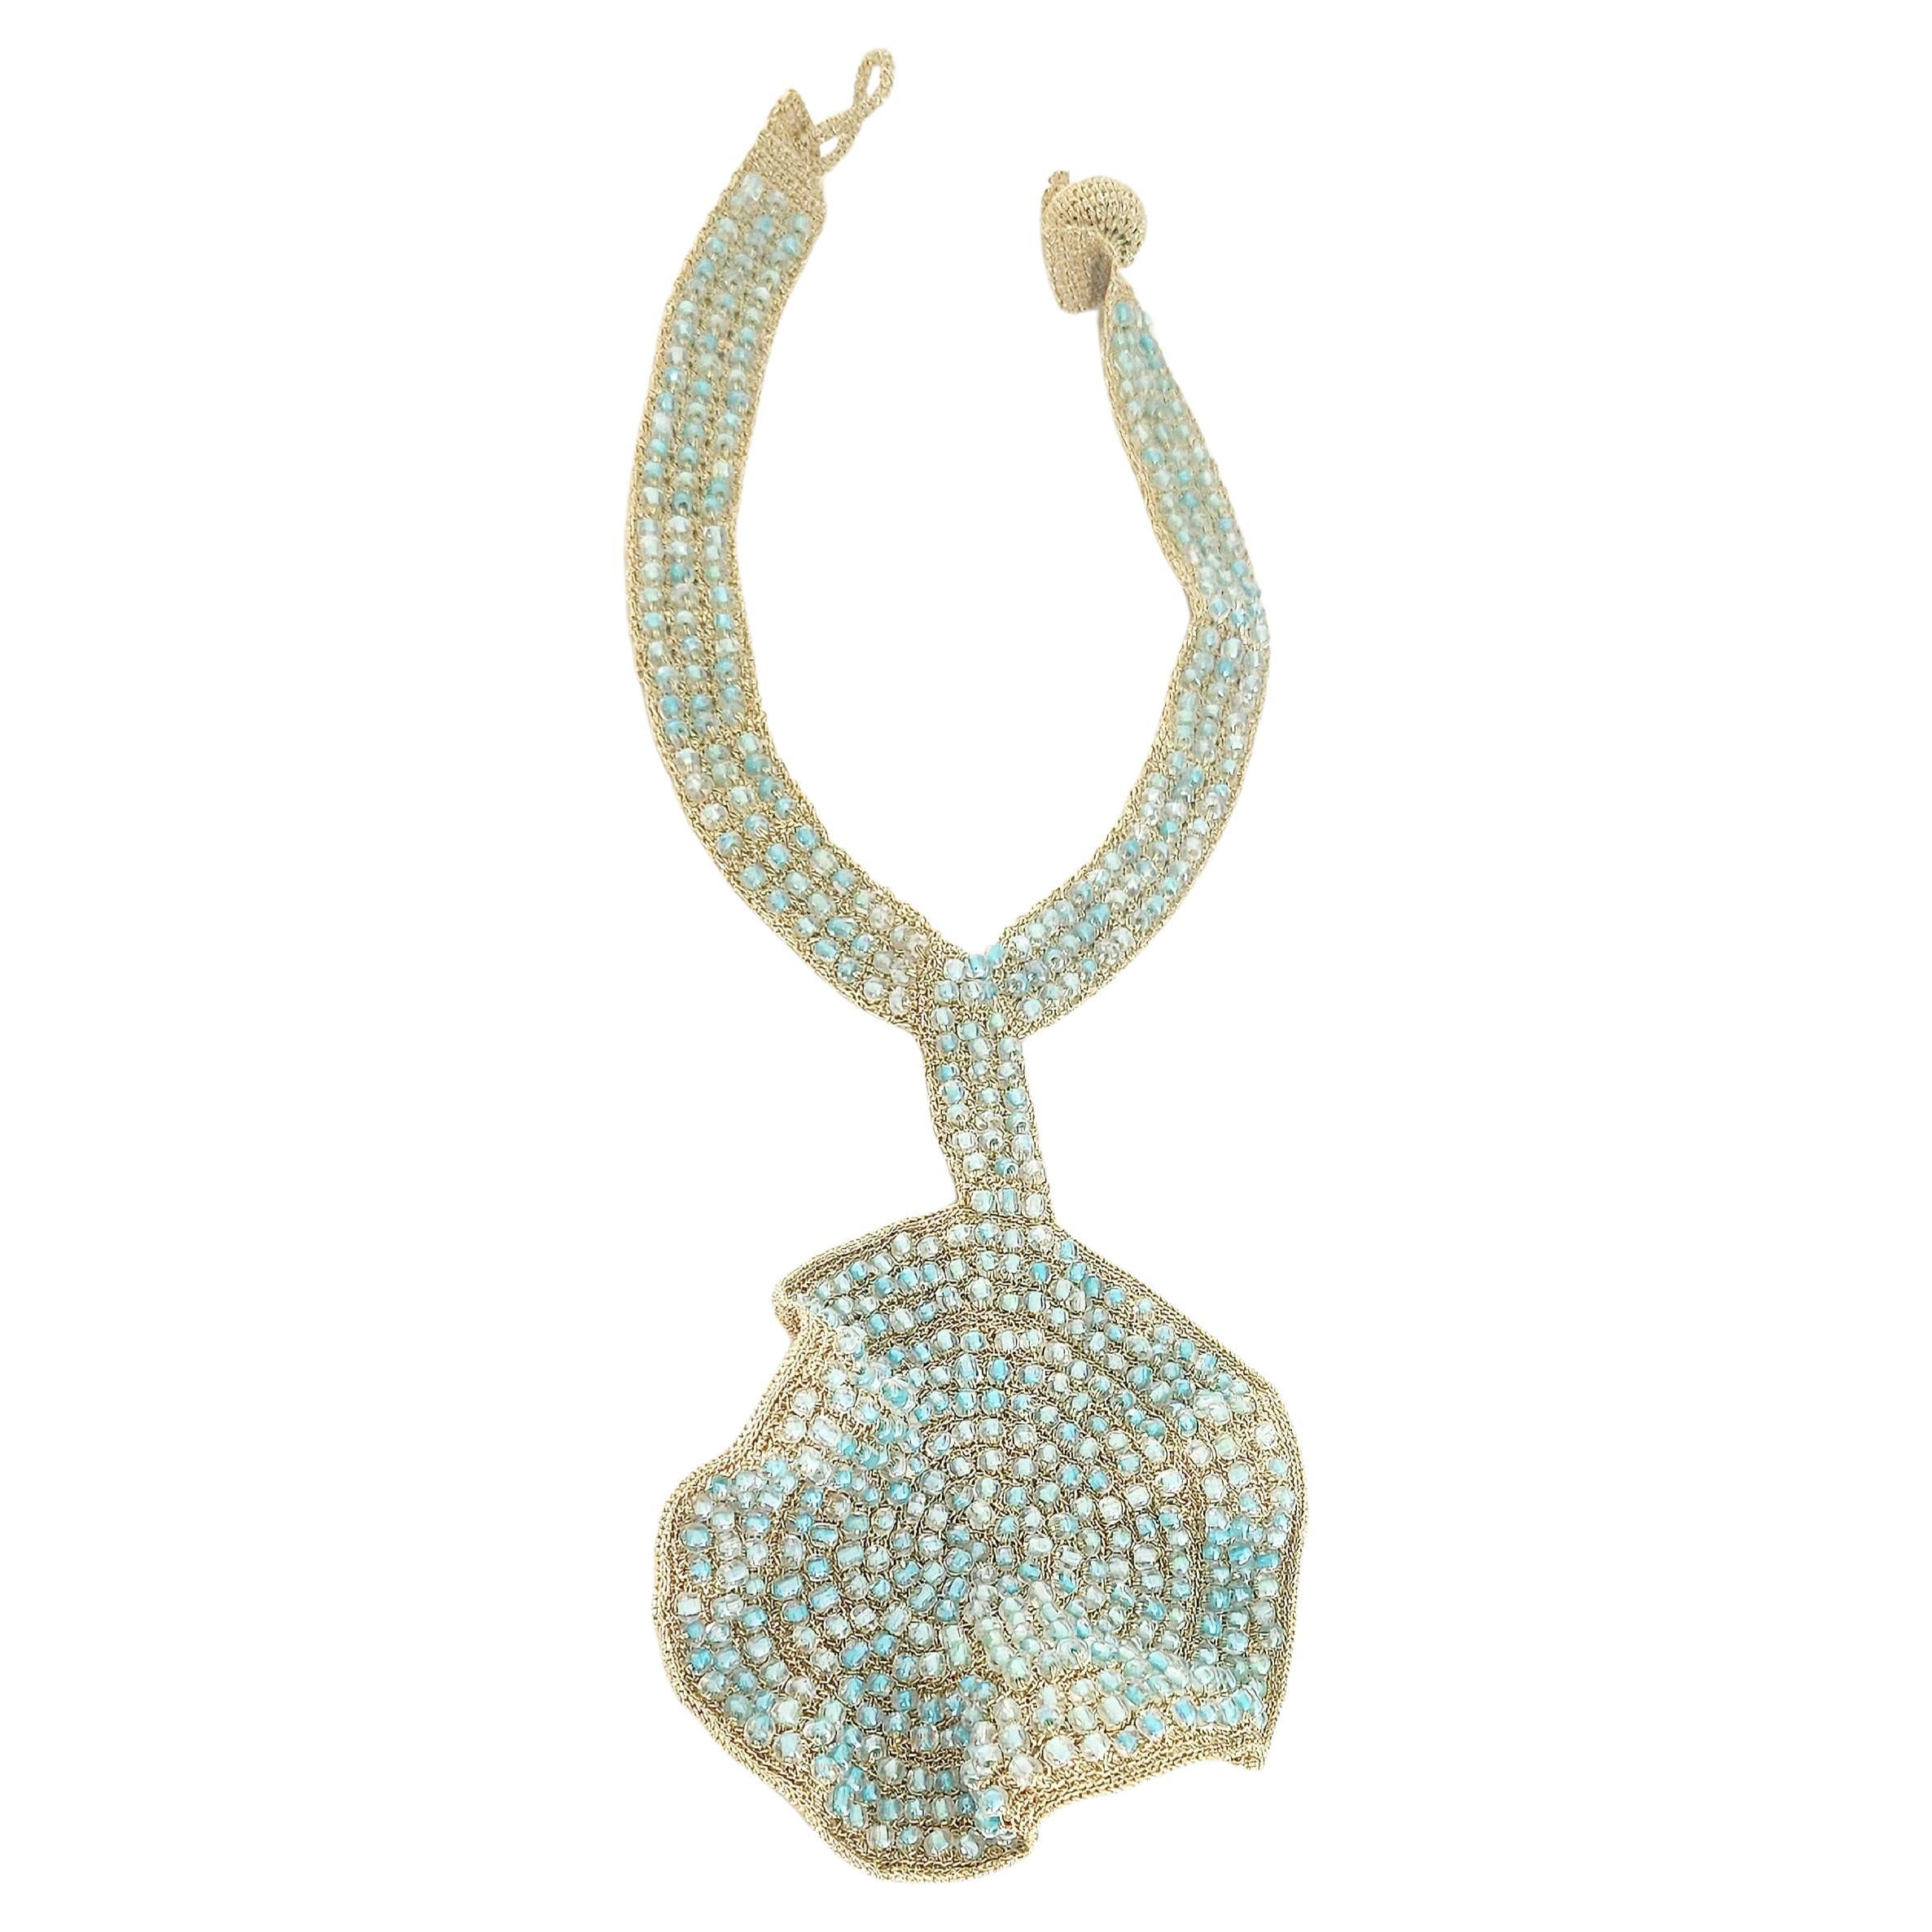 Statement Light Blue Glass Beads Crochet Necklace Light Golden Thread For Sale